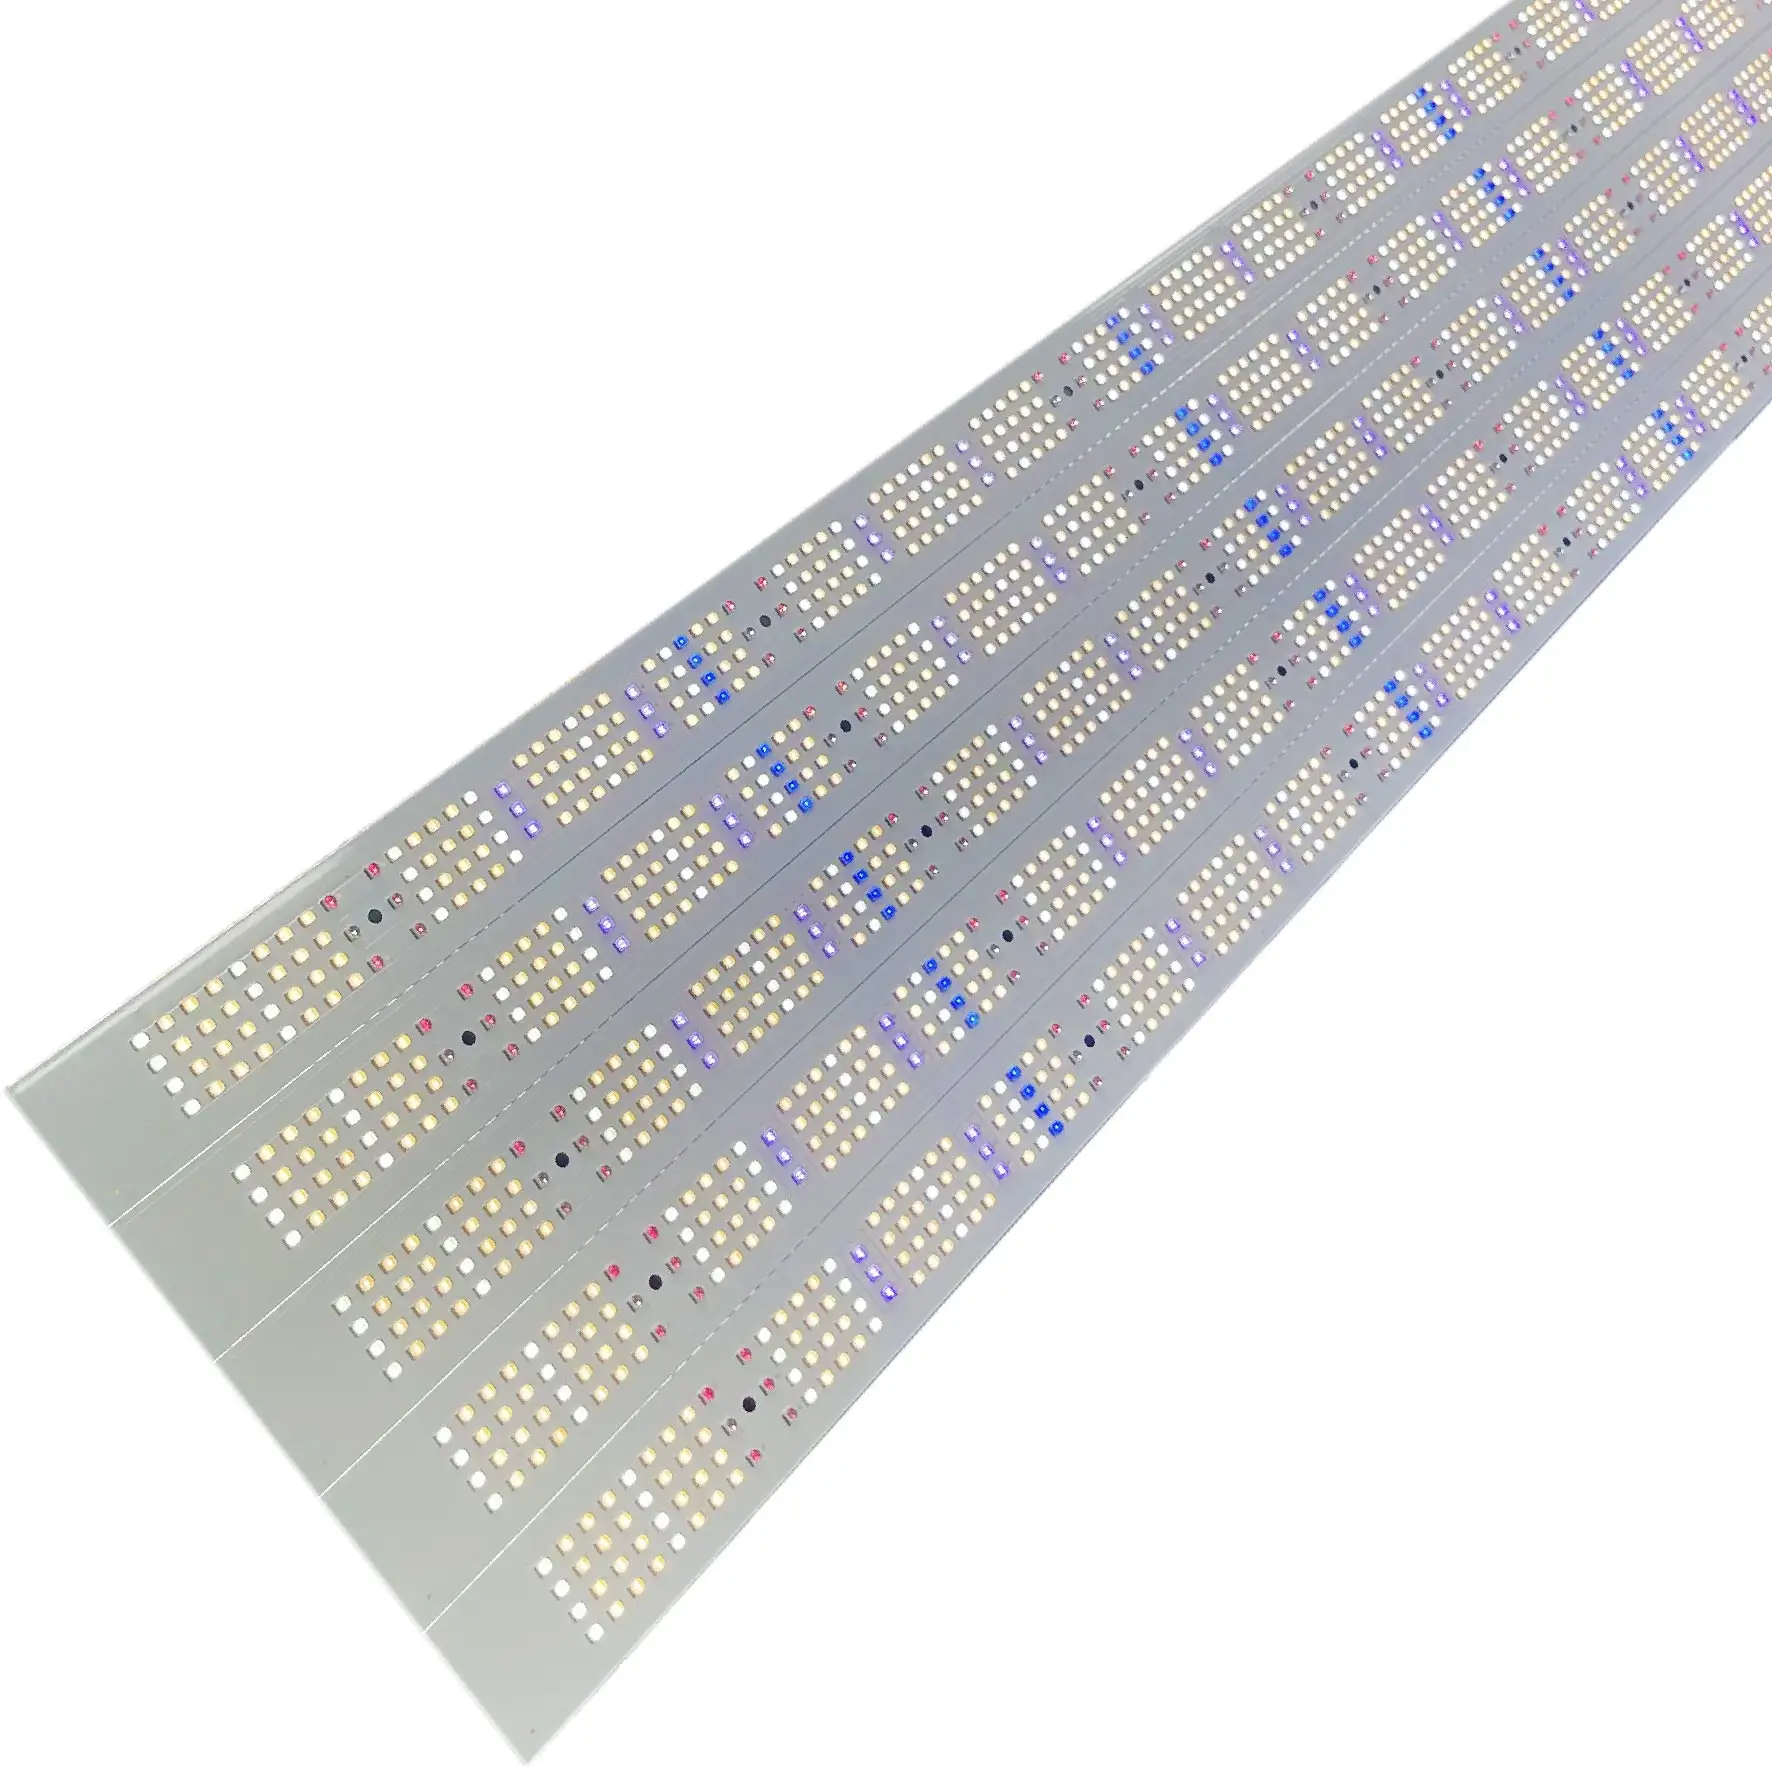 Заводская изготовленная на заказ высокая PF лампа для роста PCB плата для полного спектра UV IR LED расти свет бар